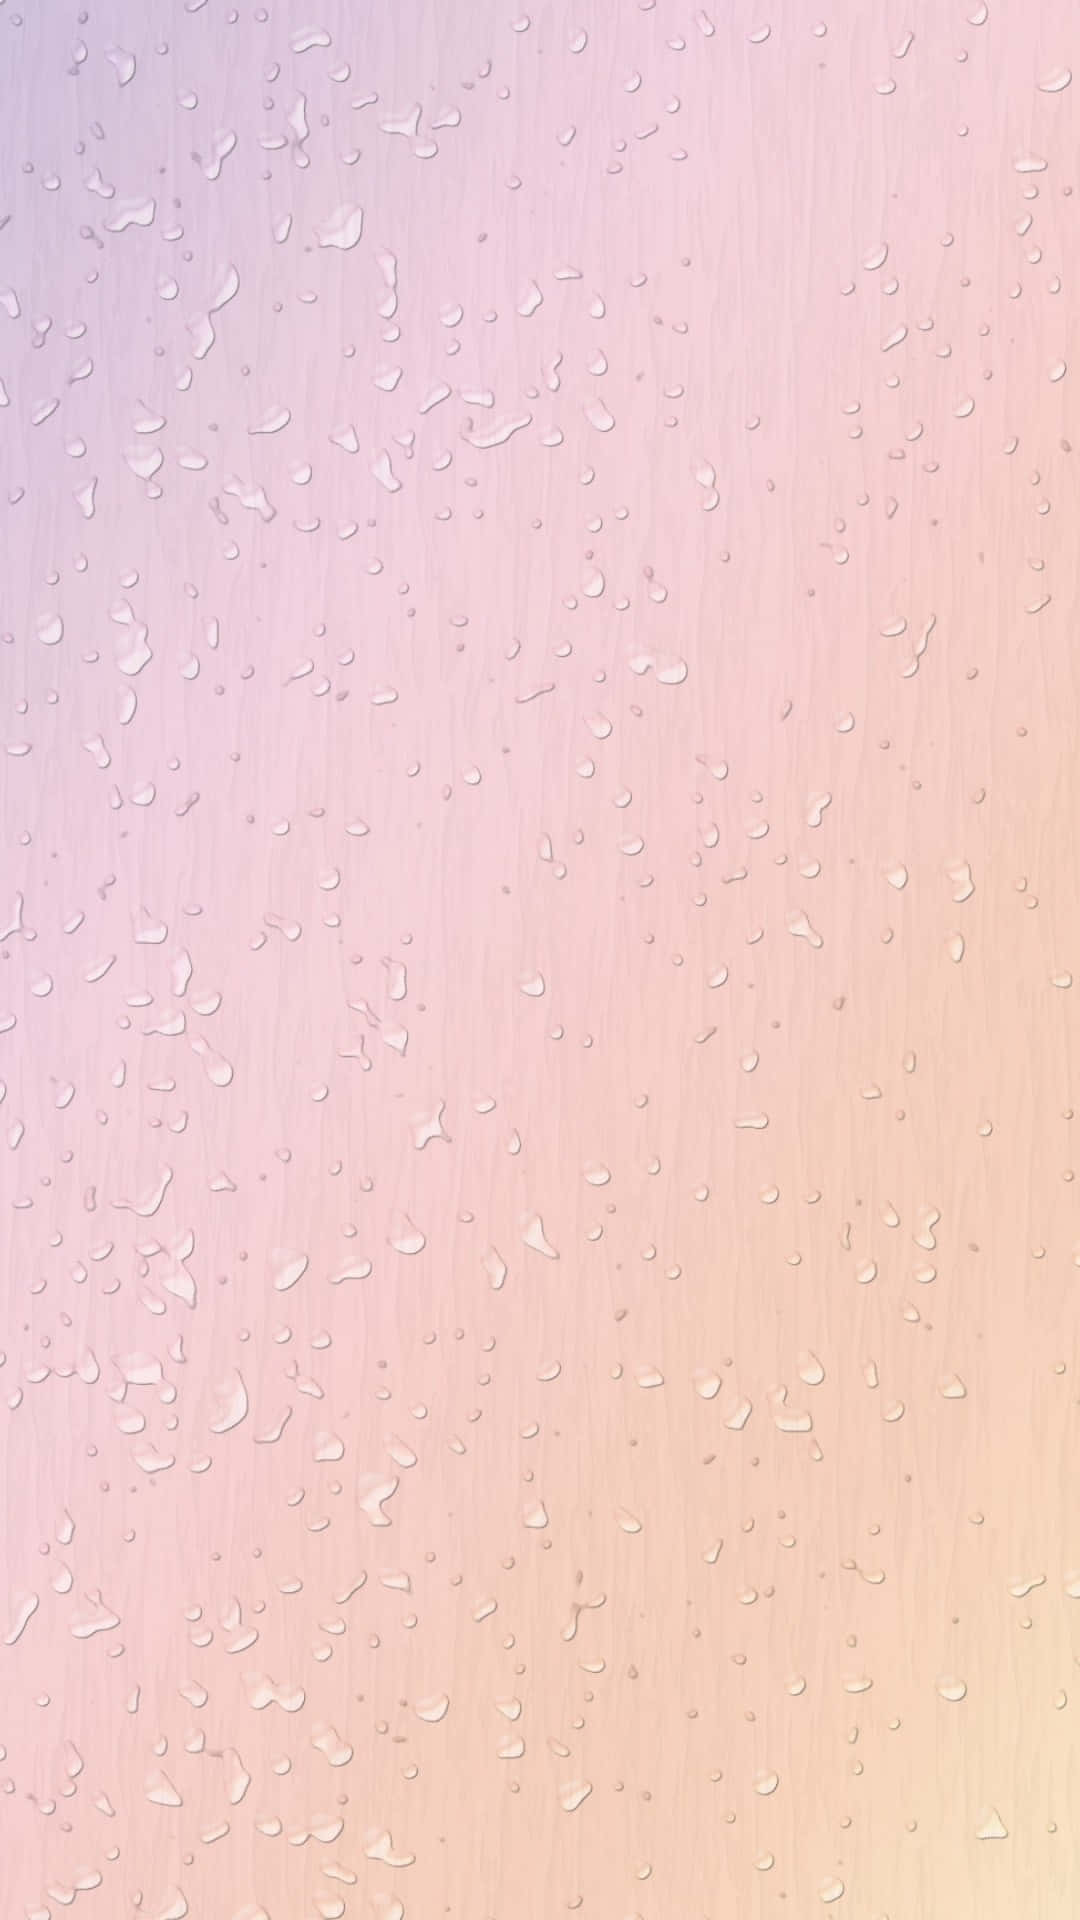 New Light Pink iPhone. Wallpaper